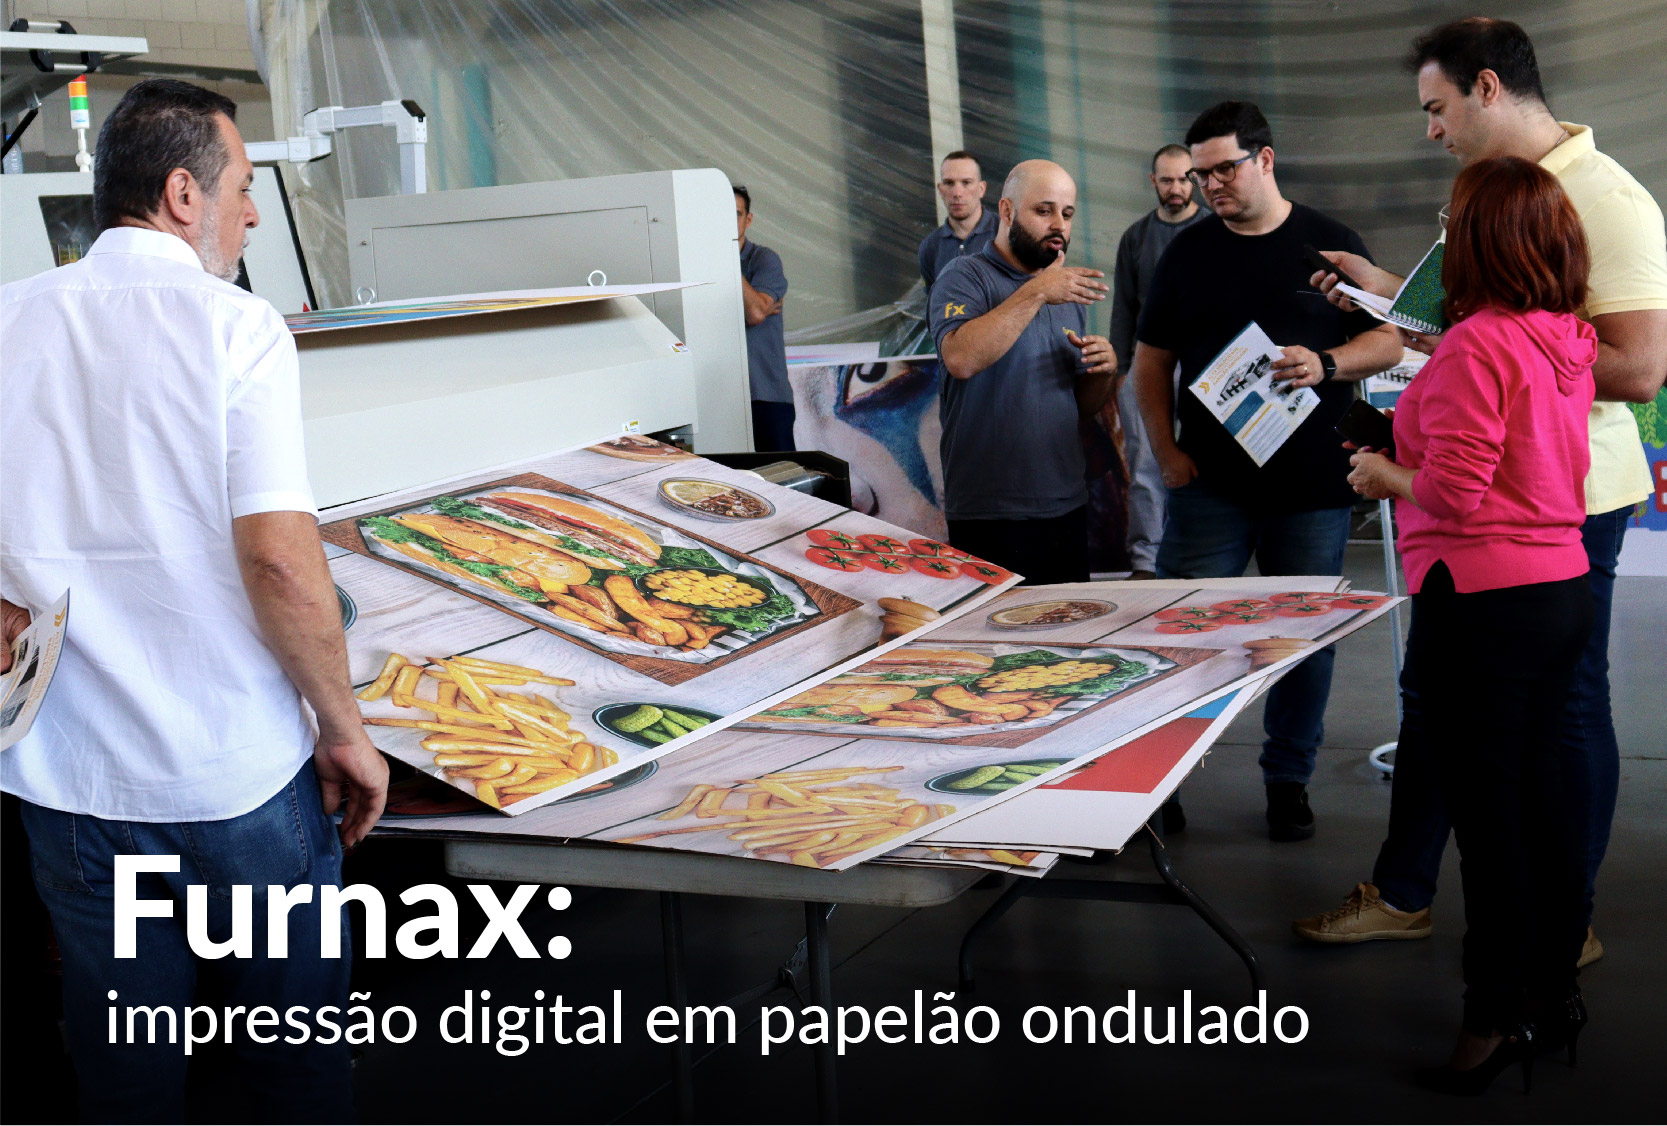 Furnax apresenta em Open House impressão digital em papelão ondulado